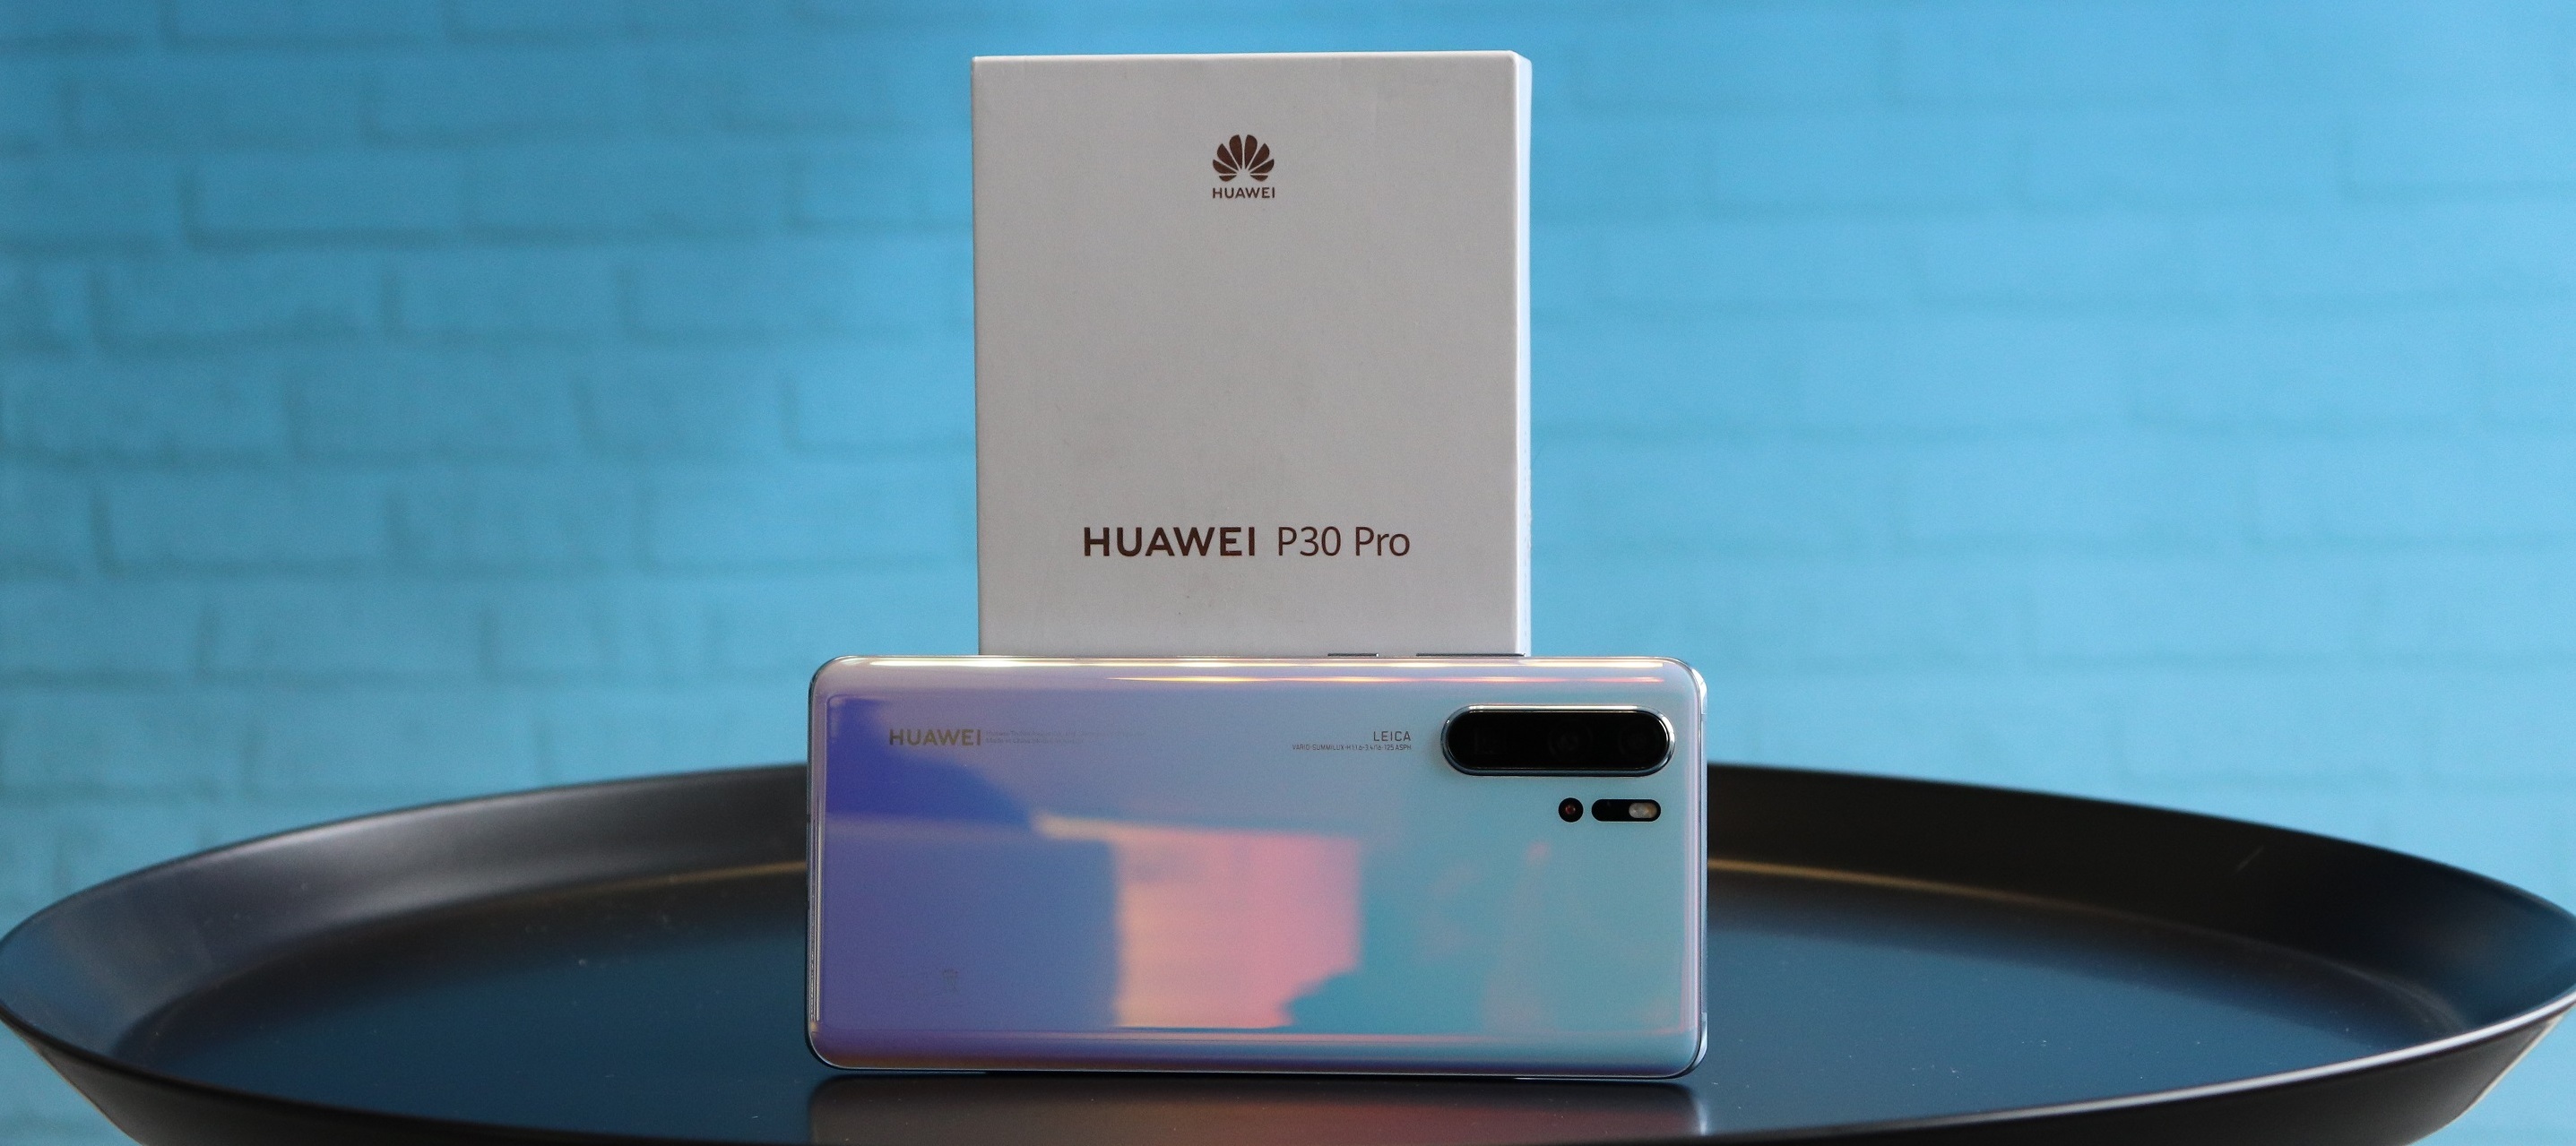 Huawei P30 Pro Testgerät - Teste das neueste Huawei Smartphone in deinen W(H)änden!